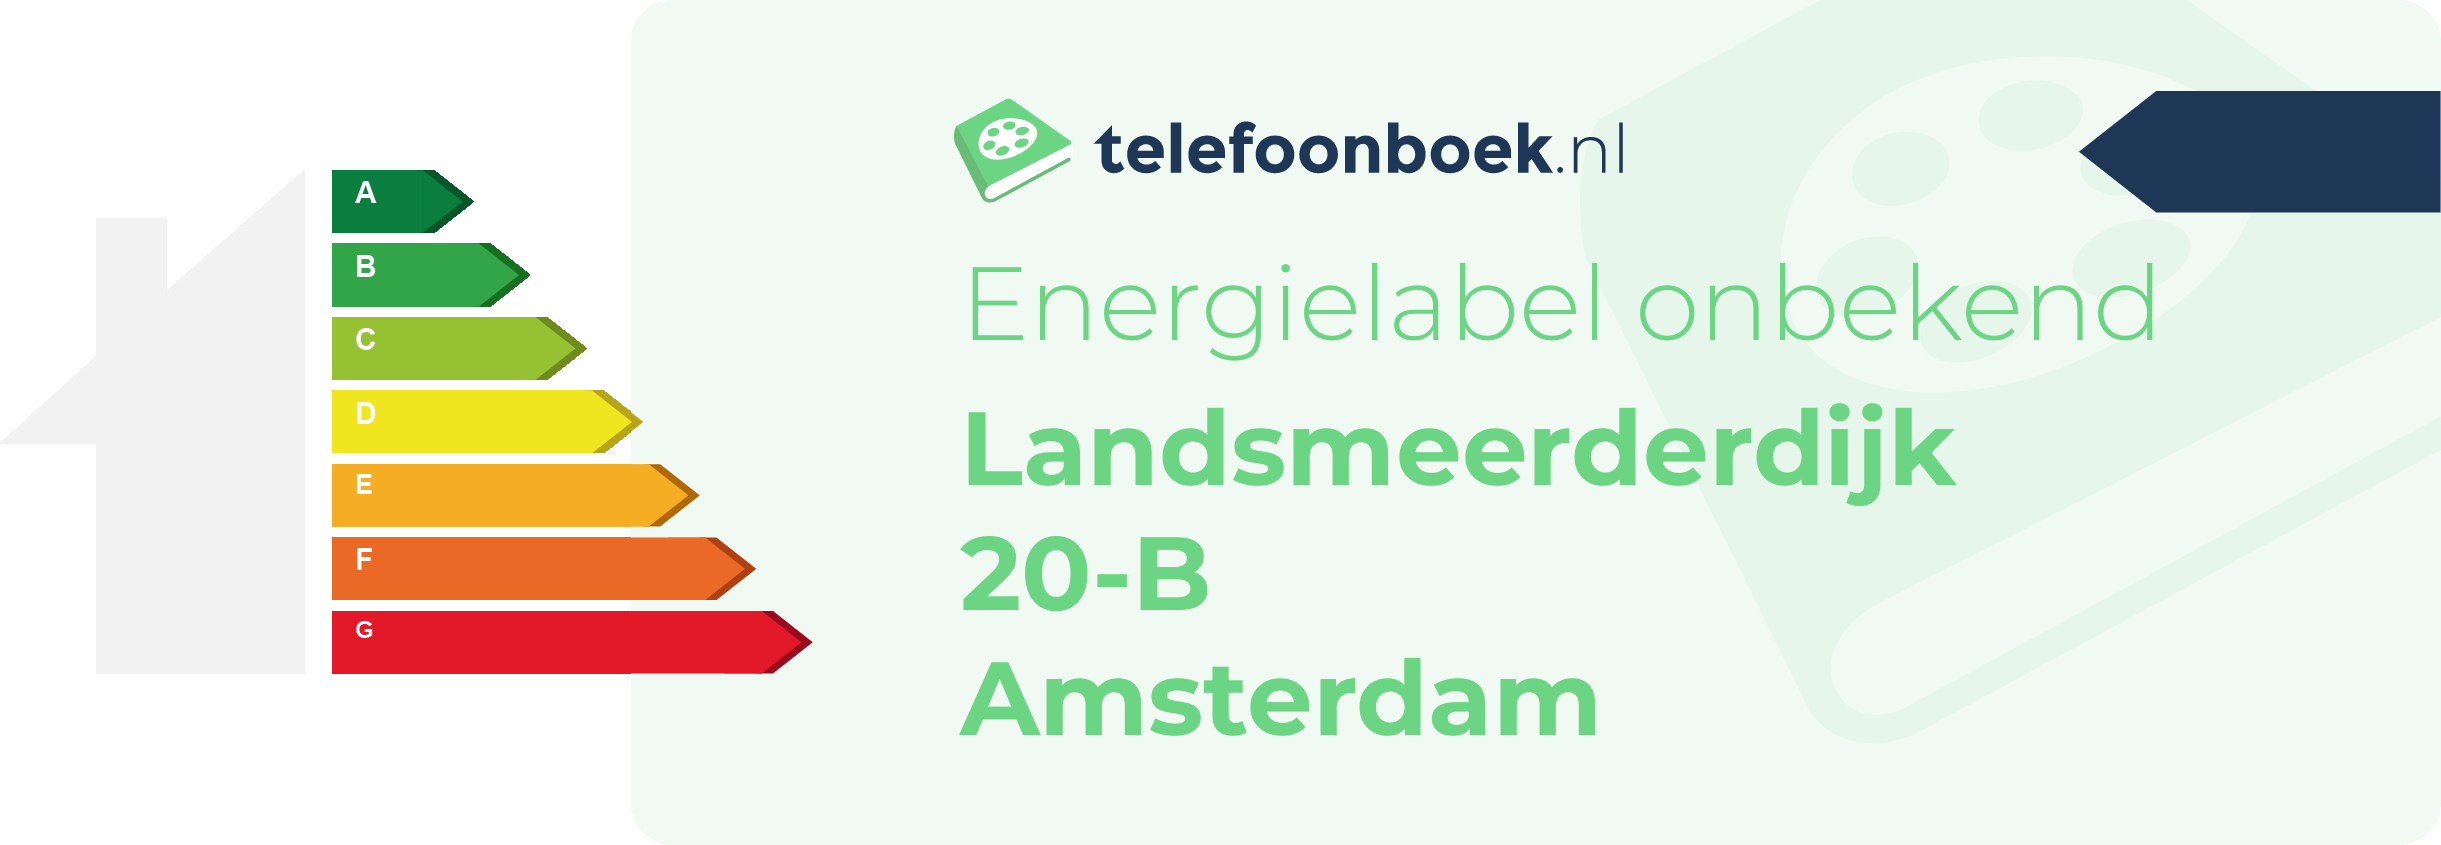 Energielabel Landsmeerderdijk 20-B Amsterdam